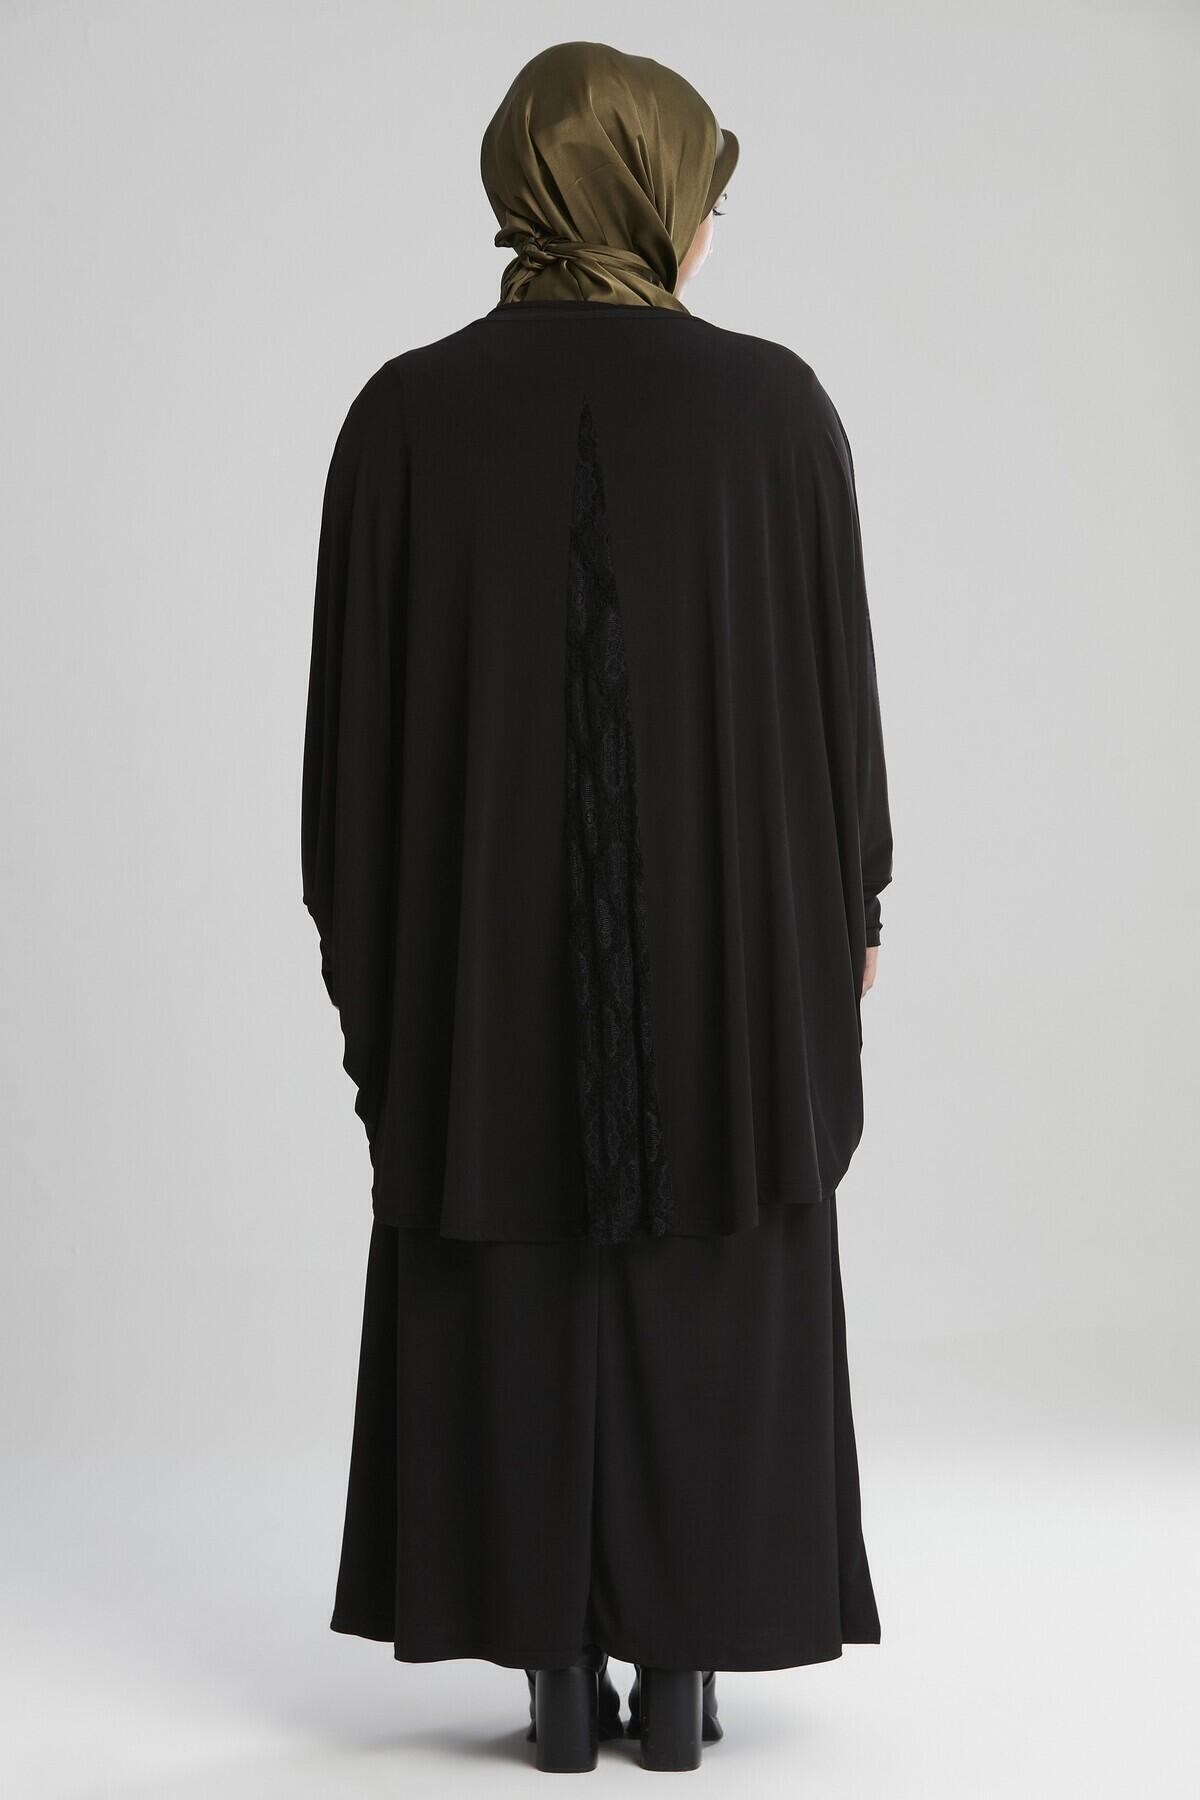 Venn Büyük Beden Elbise Takım - Siyah